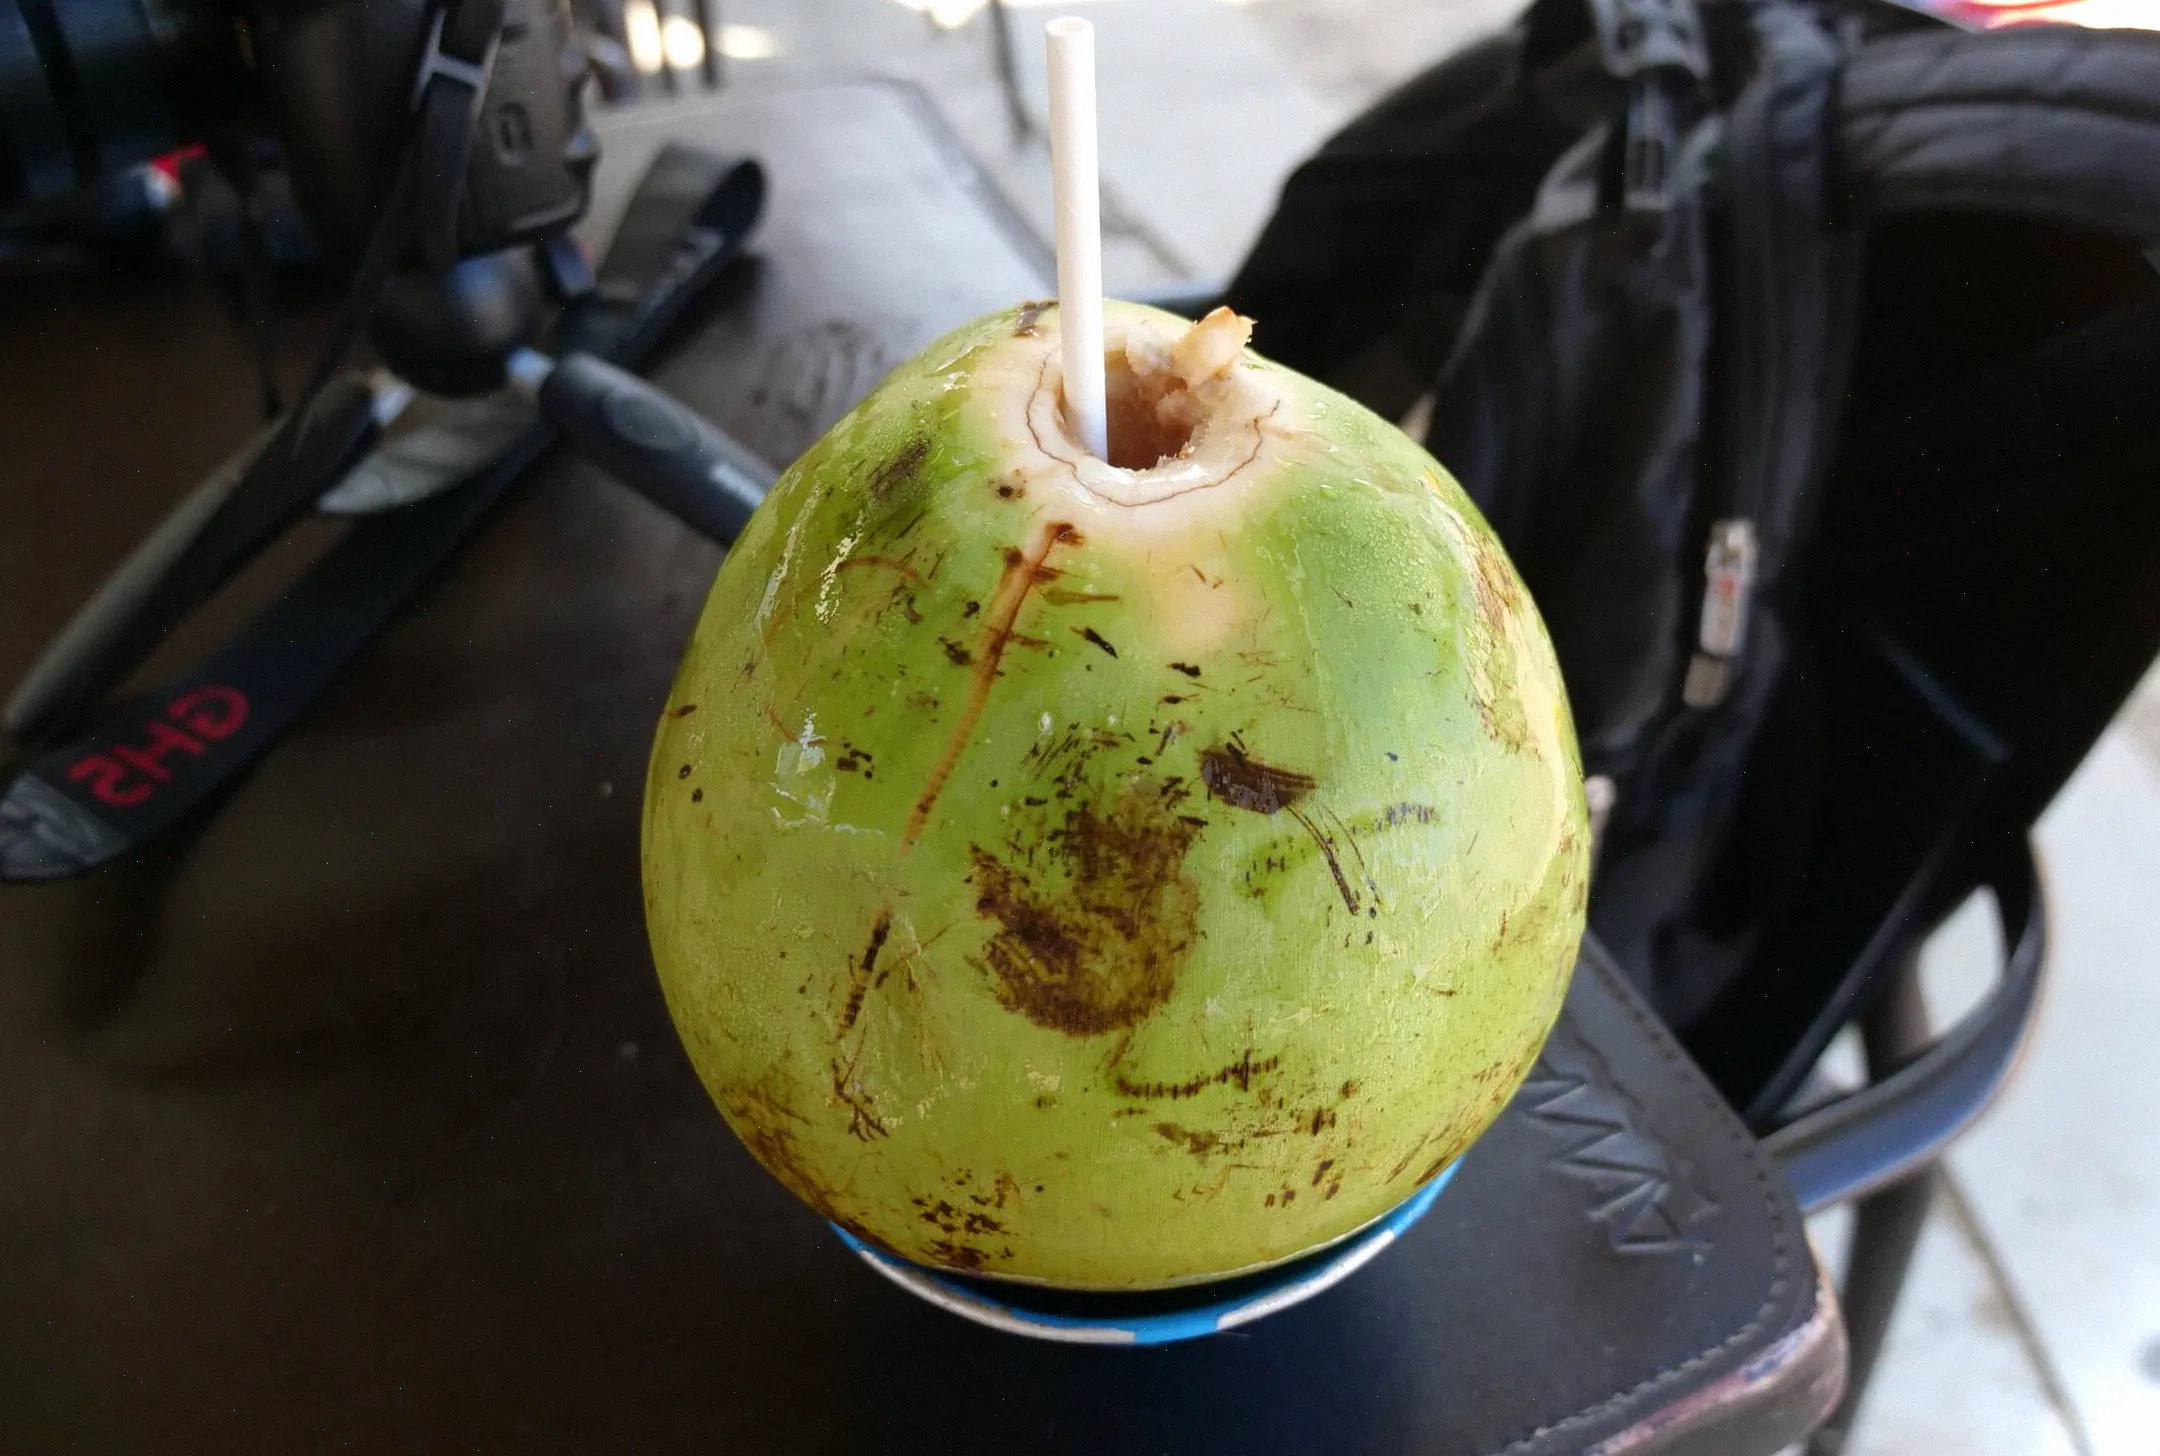 No hay mejor manera de mantenerse hidratado que con agua de coco, y estas suelen costar alrededor de 6 o 7 reales en la playa de Ipanema.